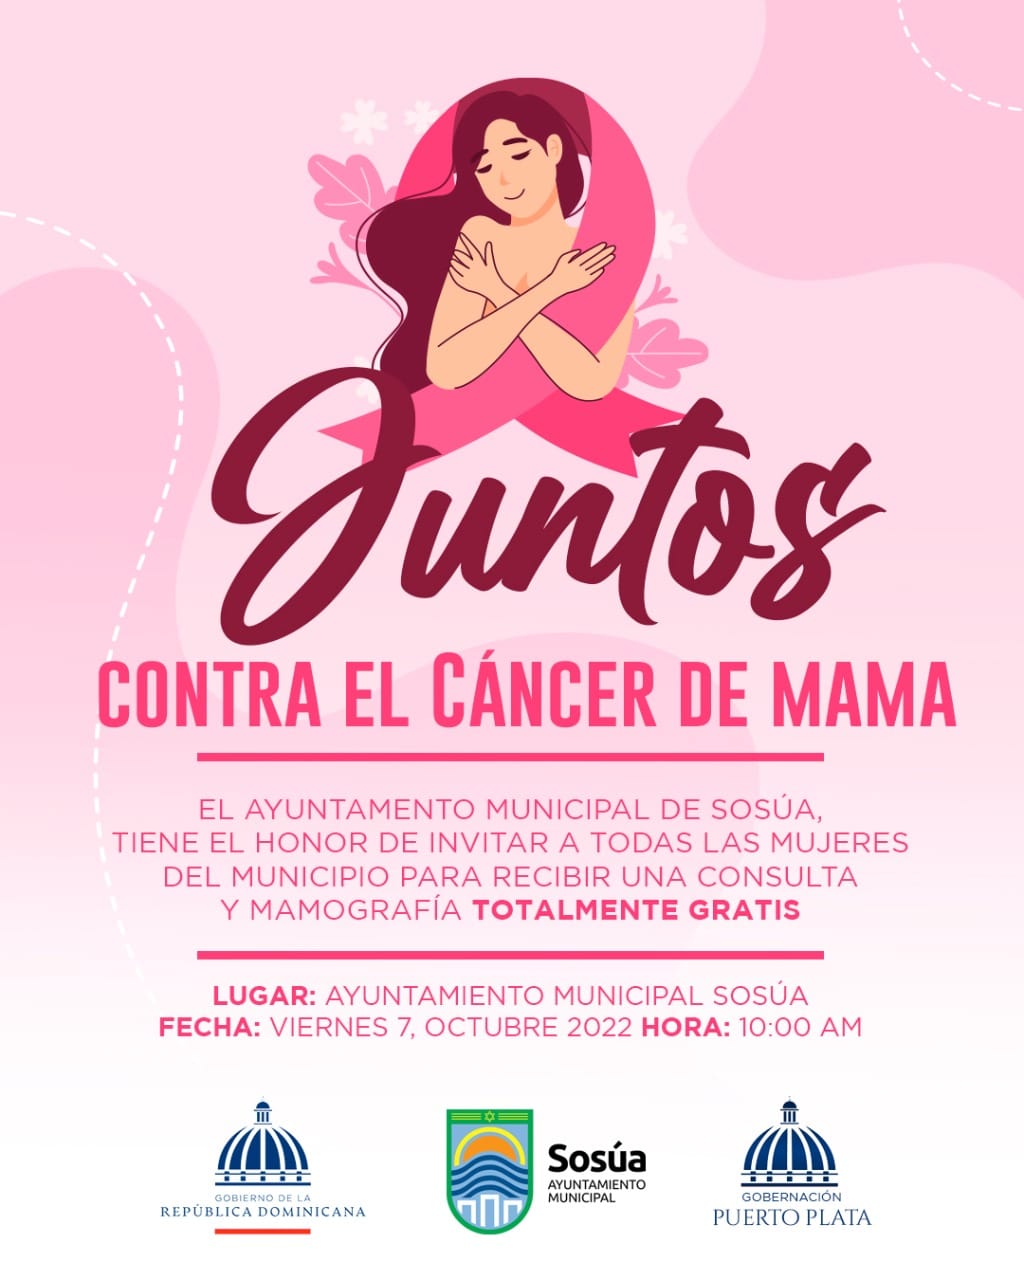 Ayuntamiento de Sosúa invita a todas las mujeres del municipio, a que esté próximo viernes 7 de octubre se den cita al cabildo a partir de las 10: AM.